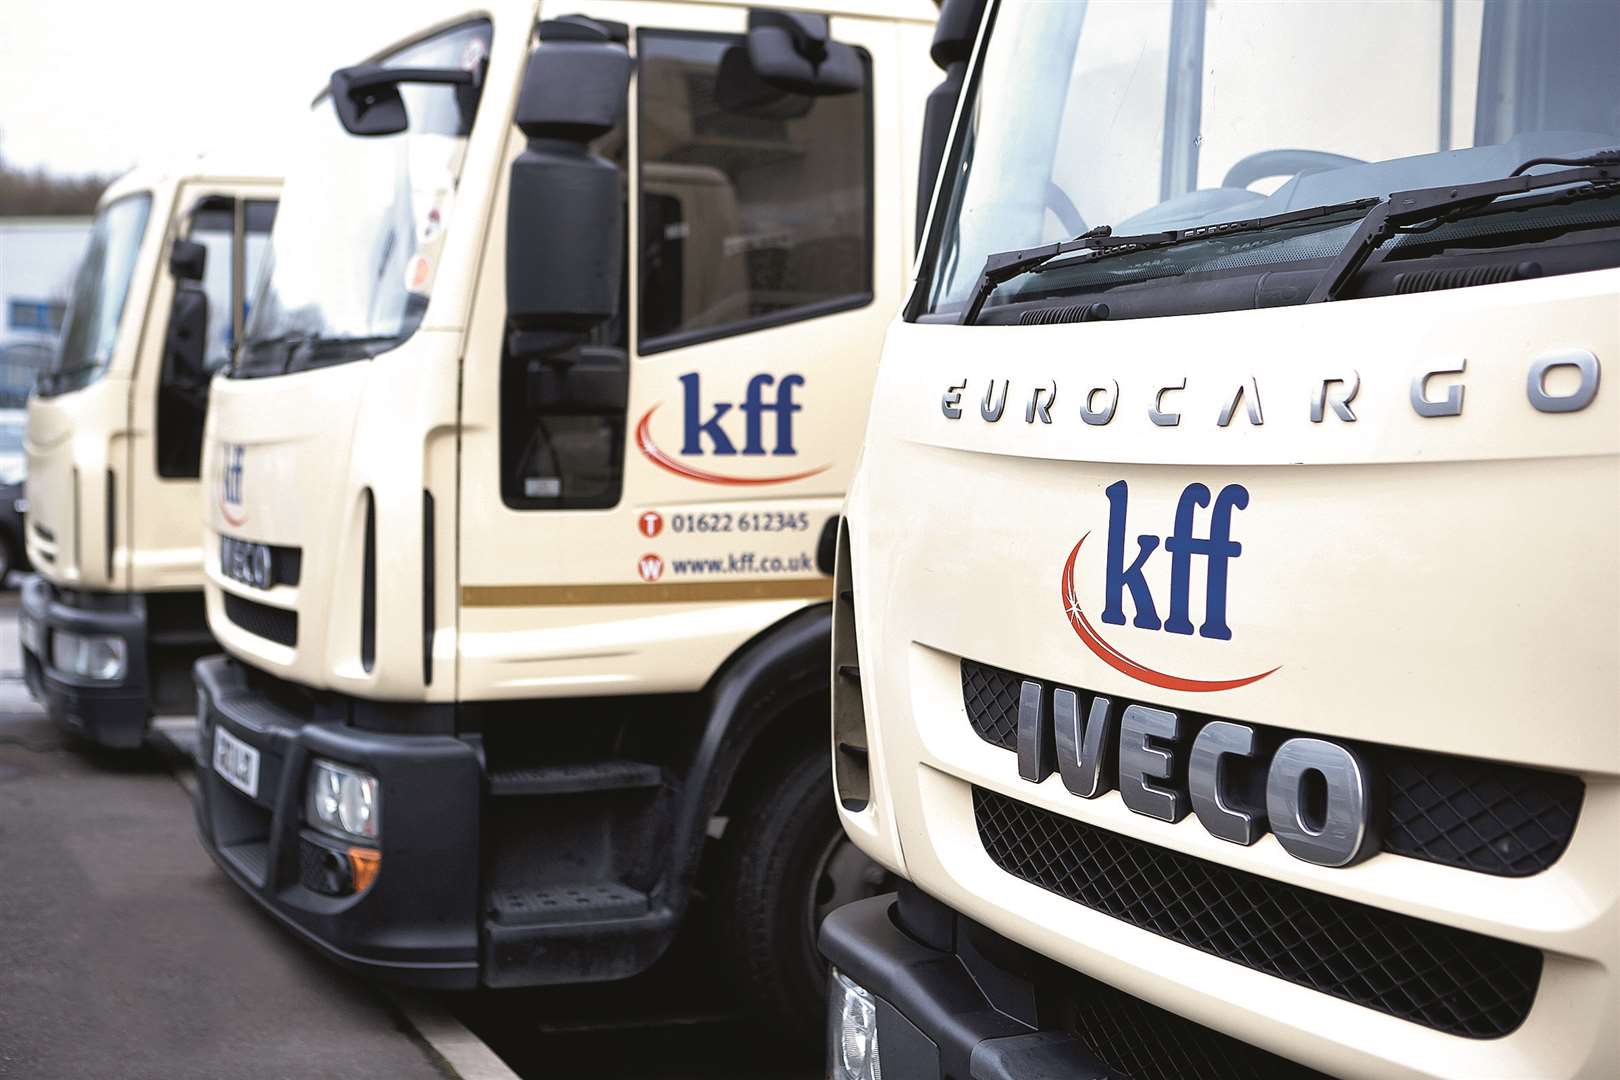 Frozen food distributor kff is based in Aylesford